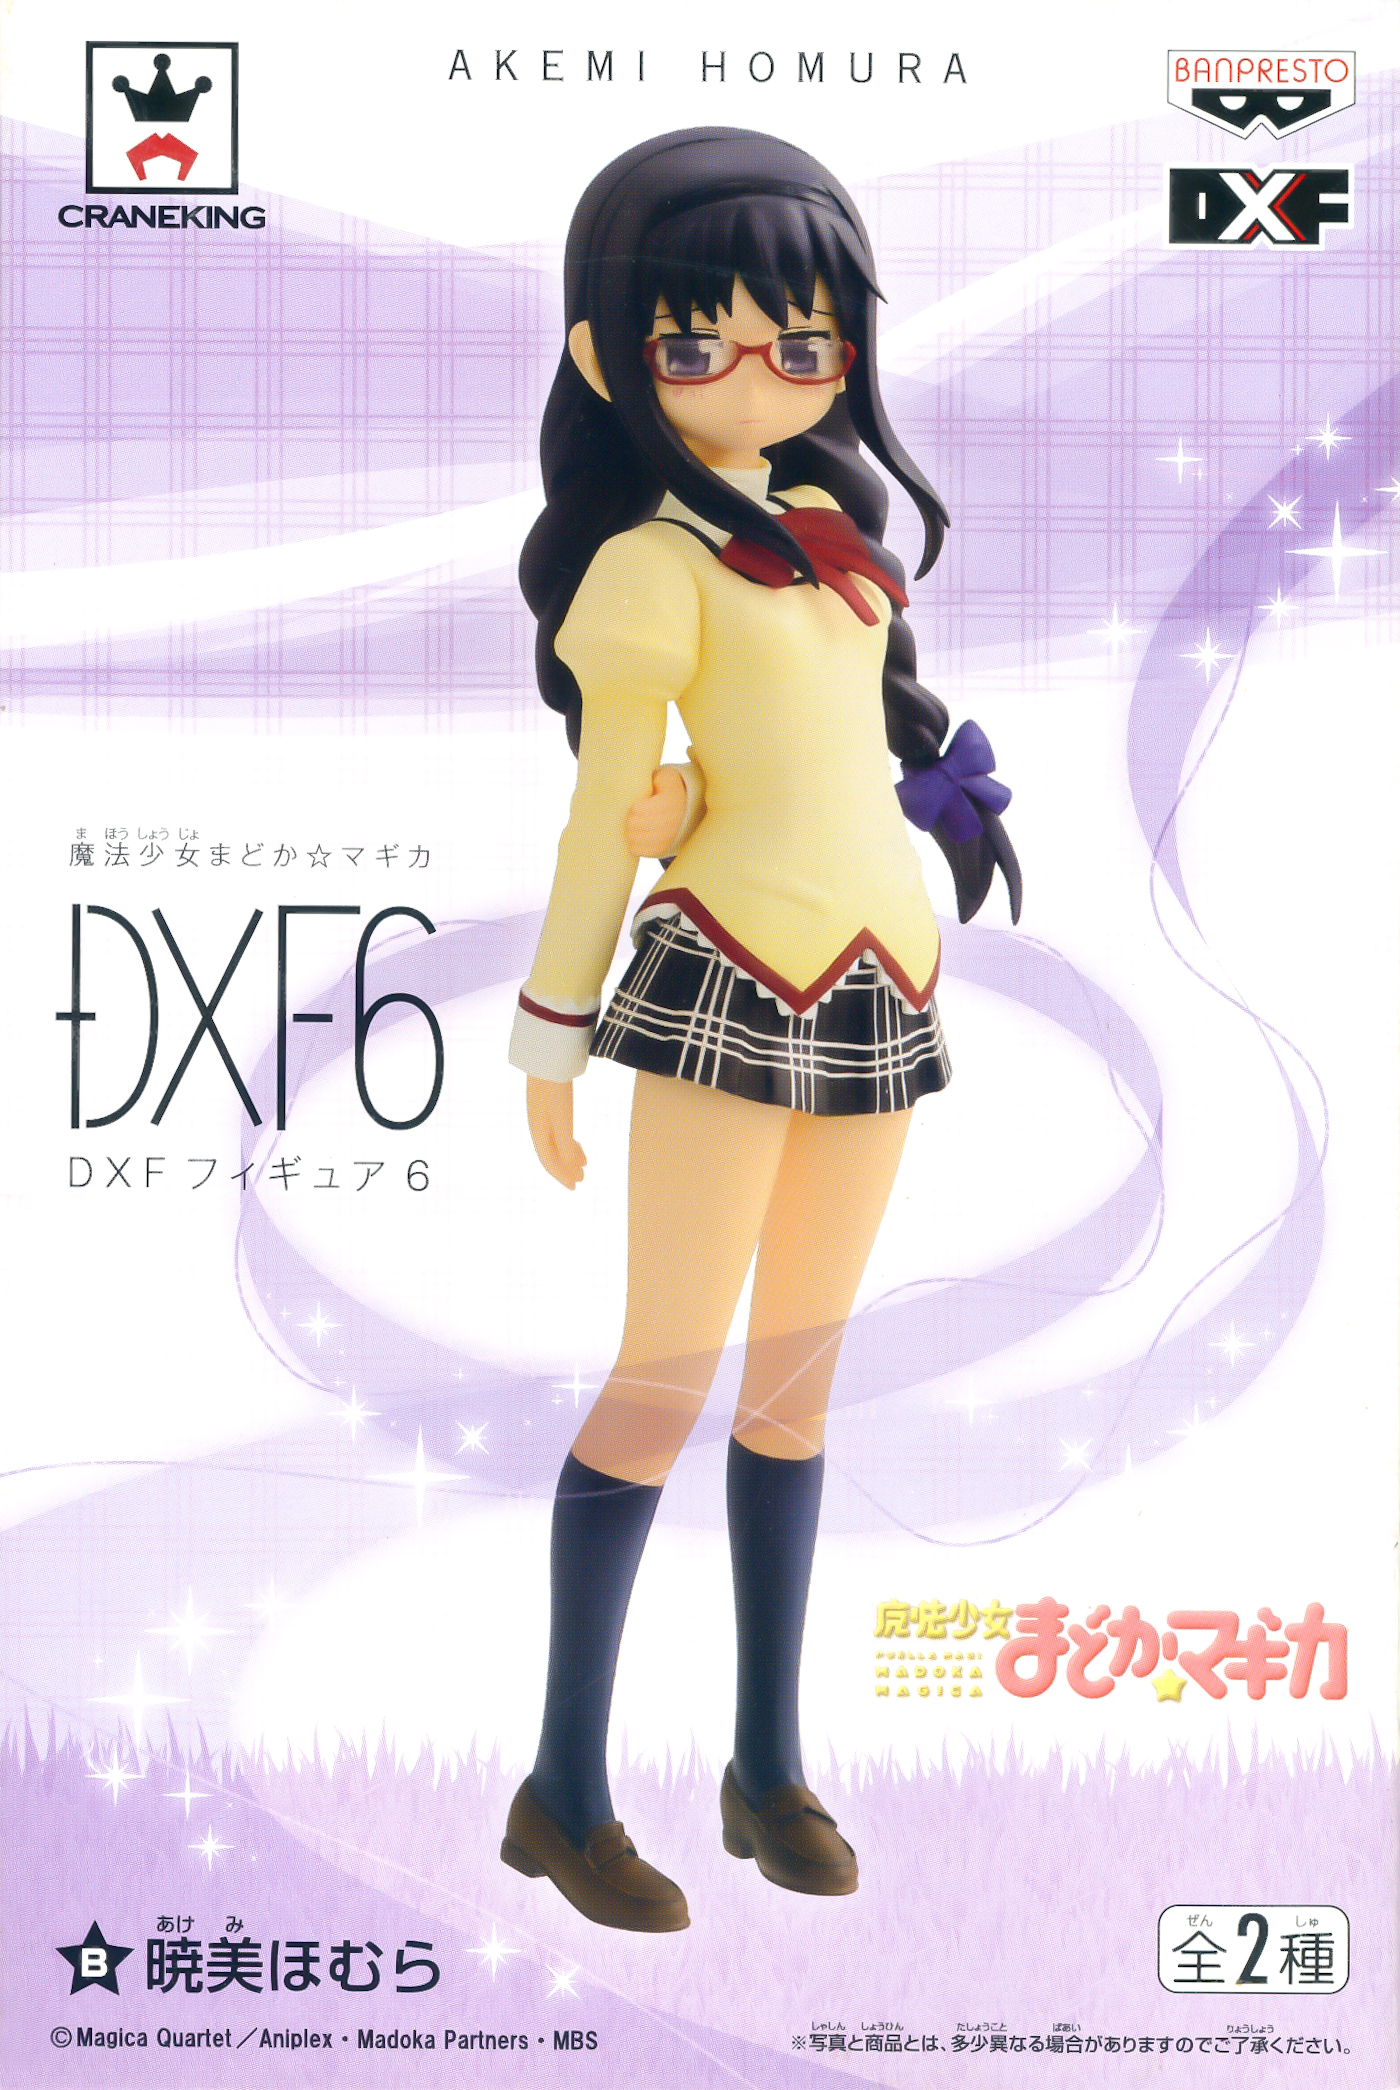 Homura Akemi, DX Figure Vol. 6, Puella Magi Madoka Magica, Banpresto